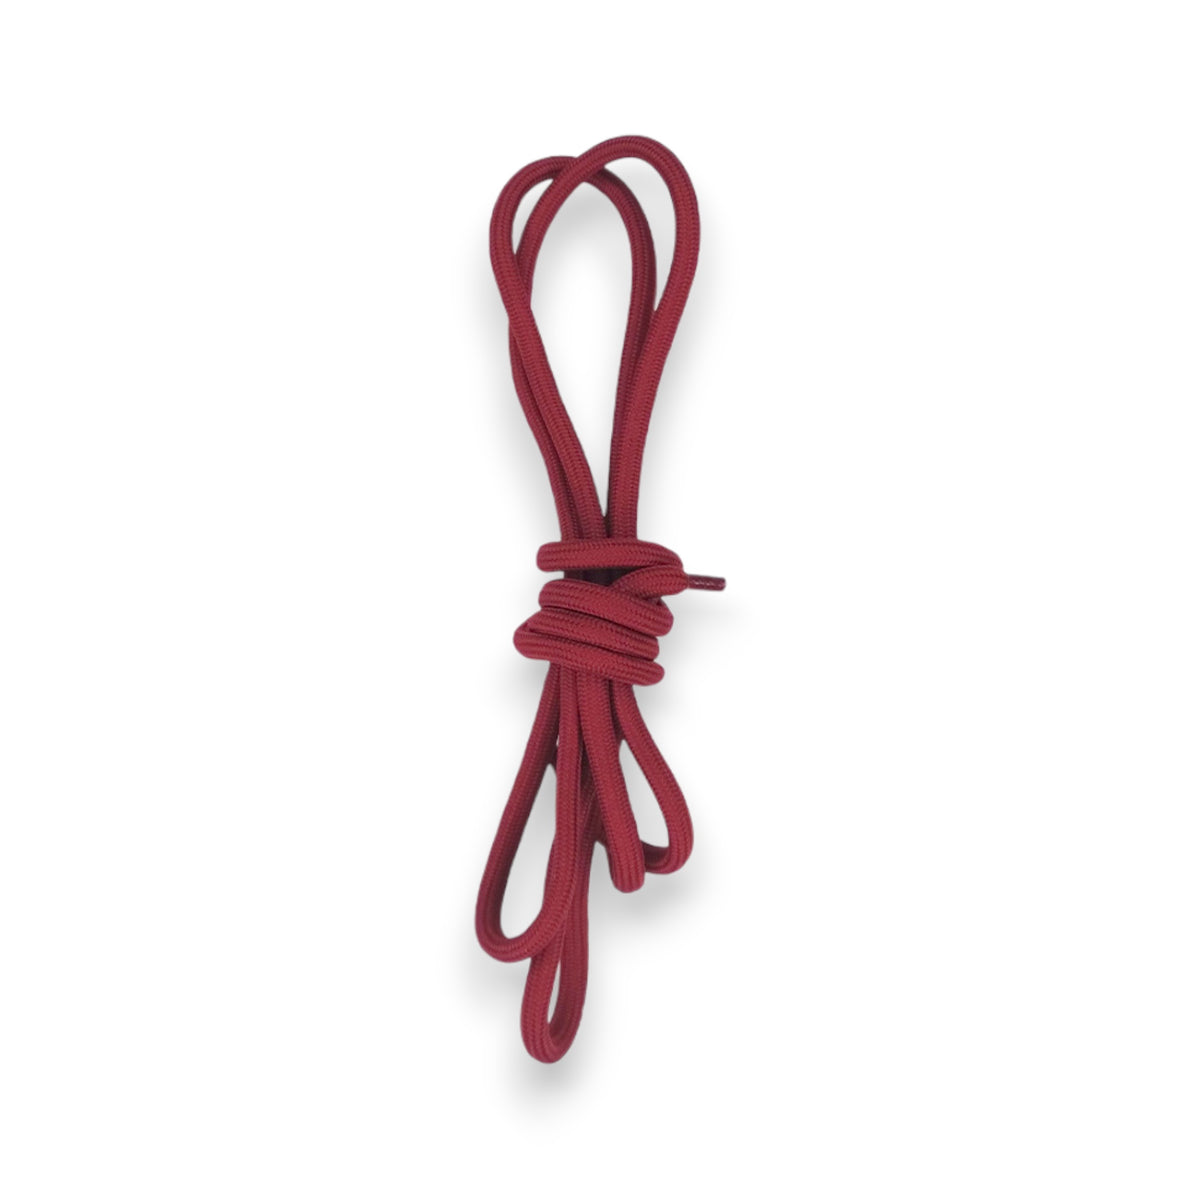 estuches straps el rey strap con kit de repuestos circulares para estuches color rojo